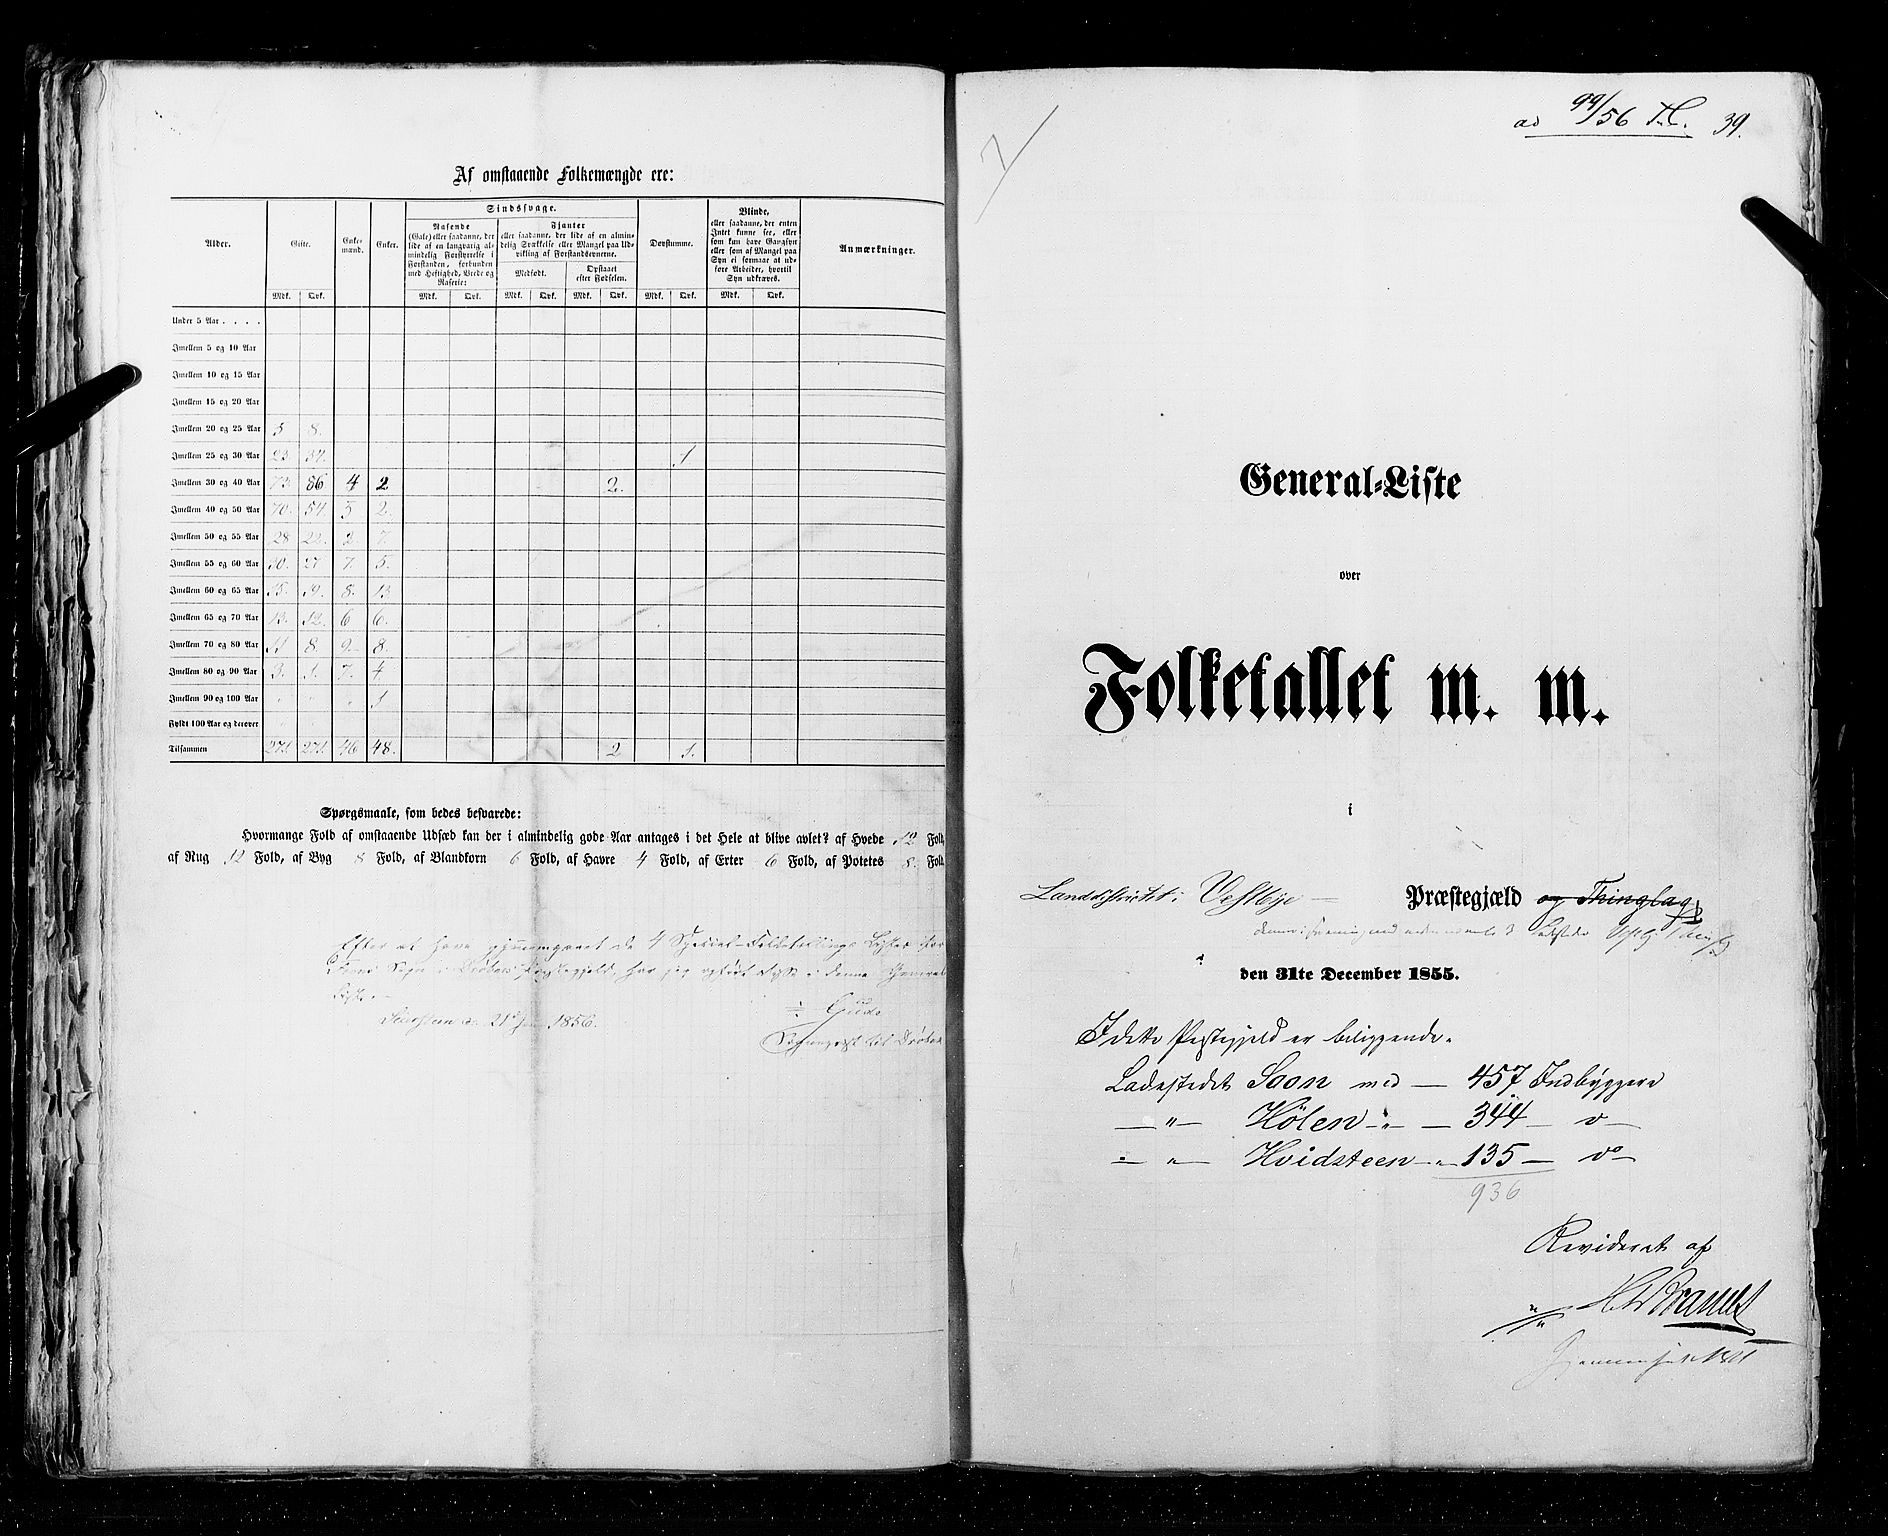 RA, Folketellingen 1855, bind 1: Akershus amt, Smålenenes amt og Hedemarken amt, 1855, s. 39